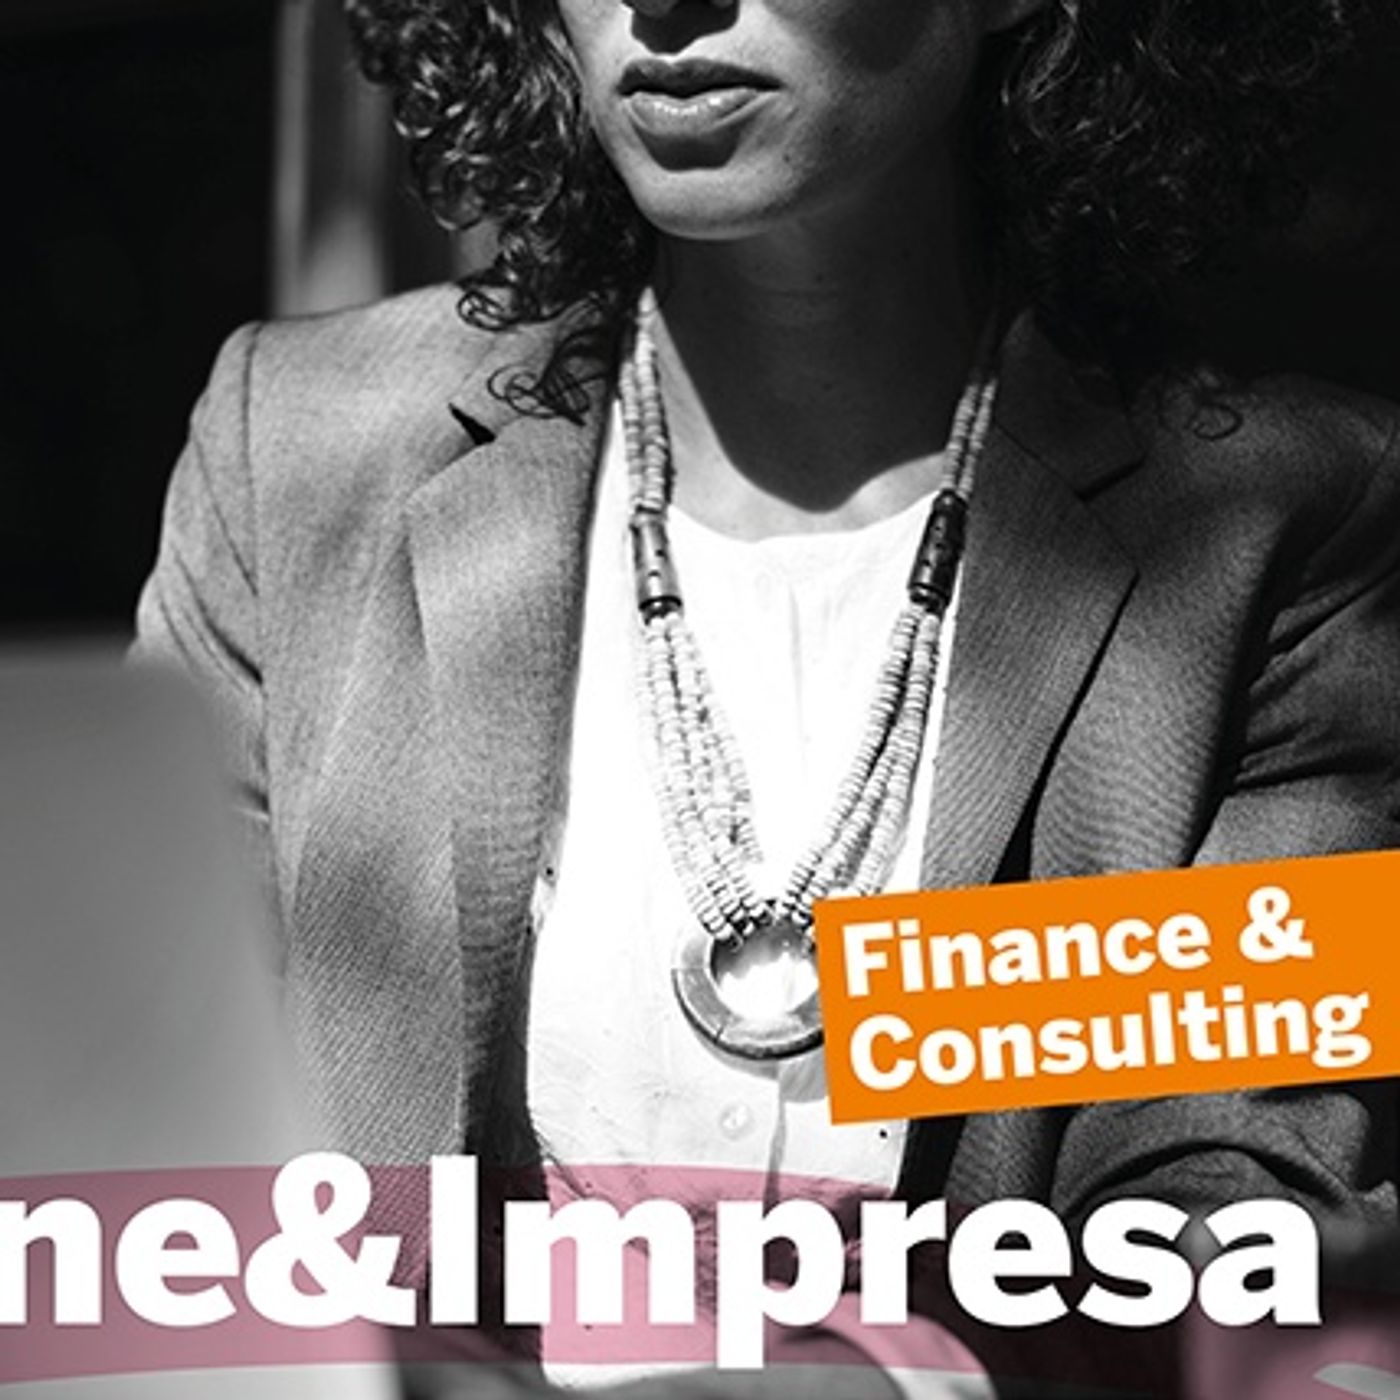 Donne & Impresa: le donne della finanza